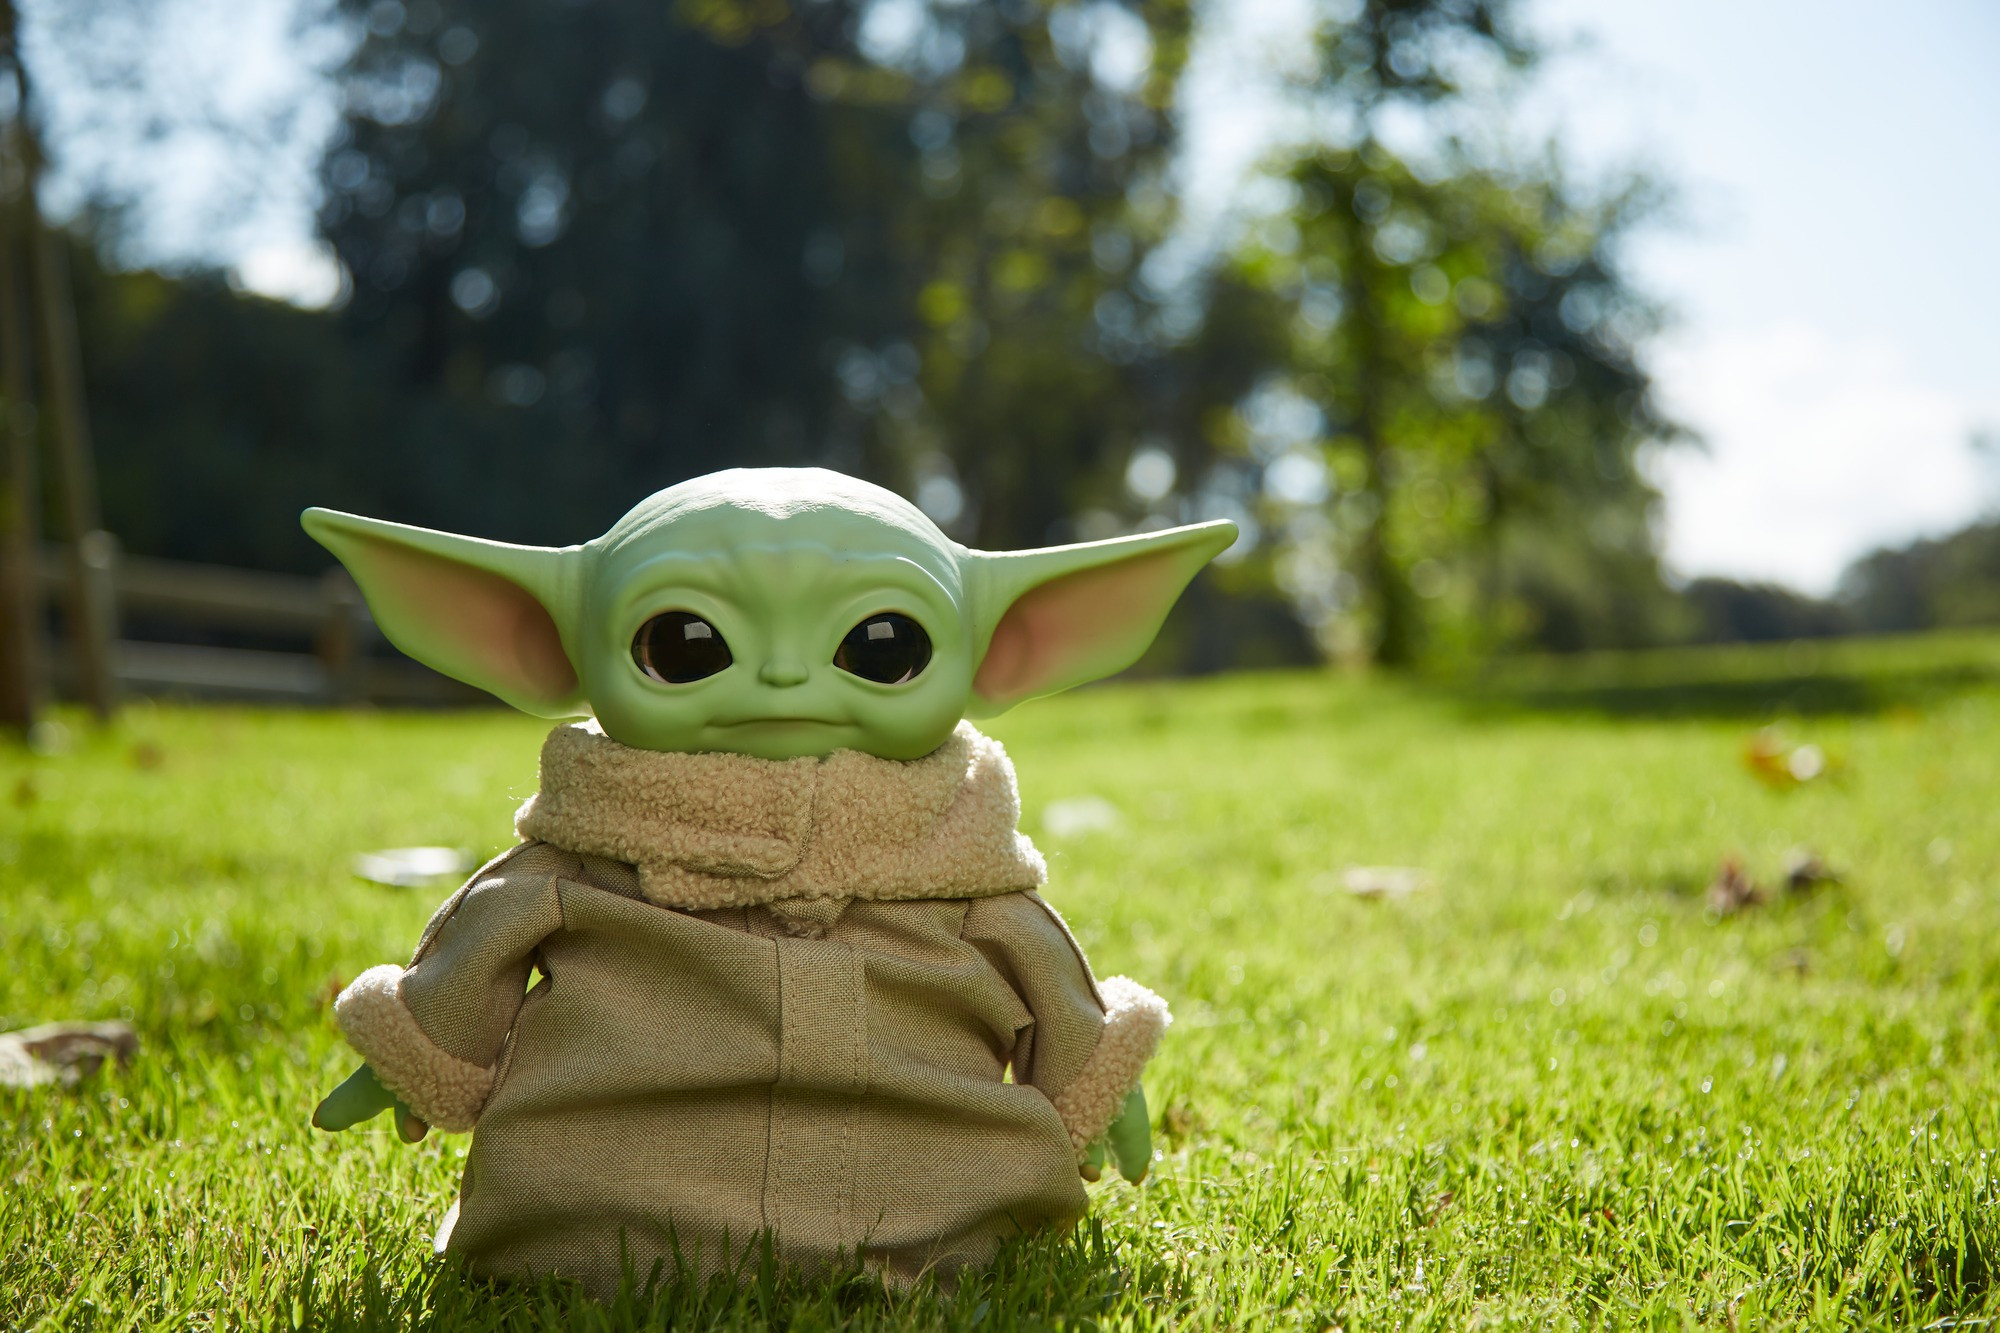 Star Wars Baby Yoda El niño de la serie The Mandalorian